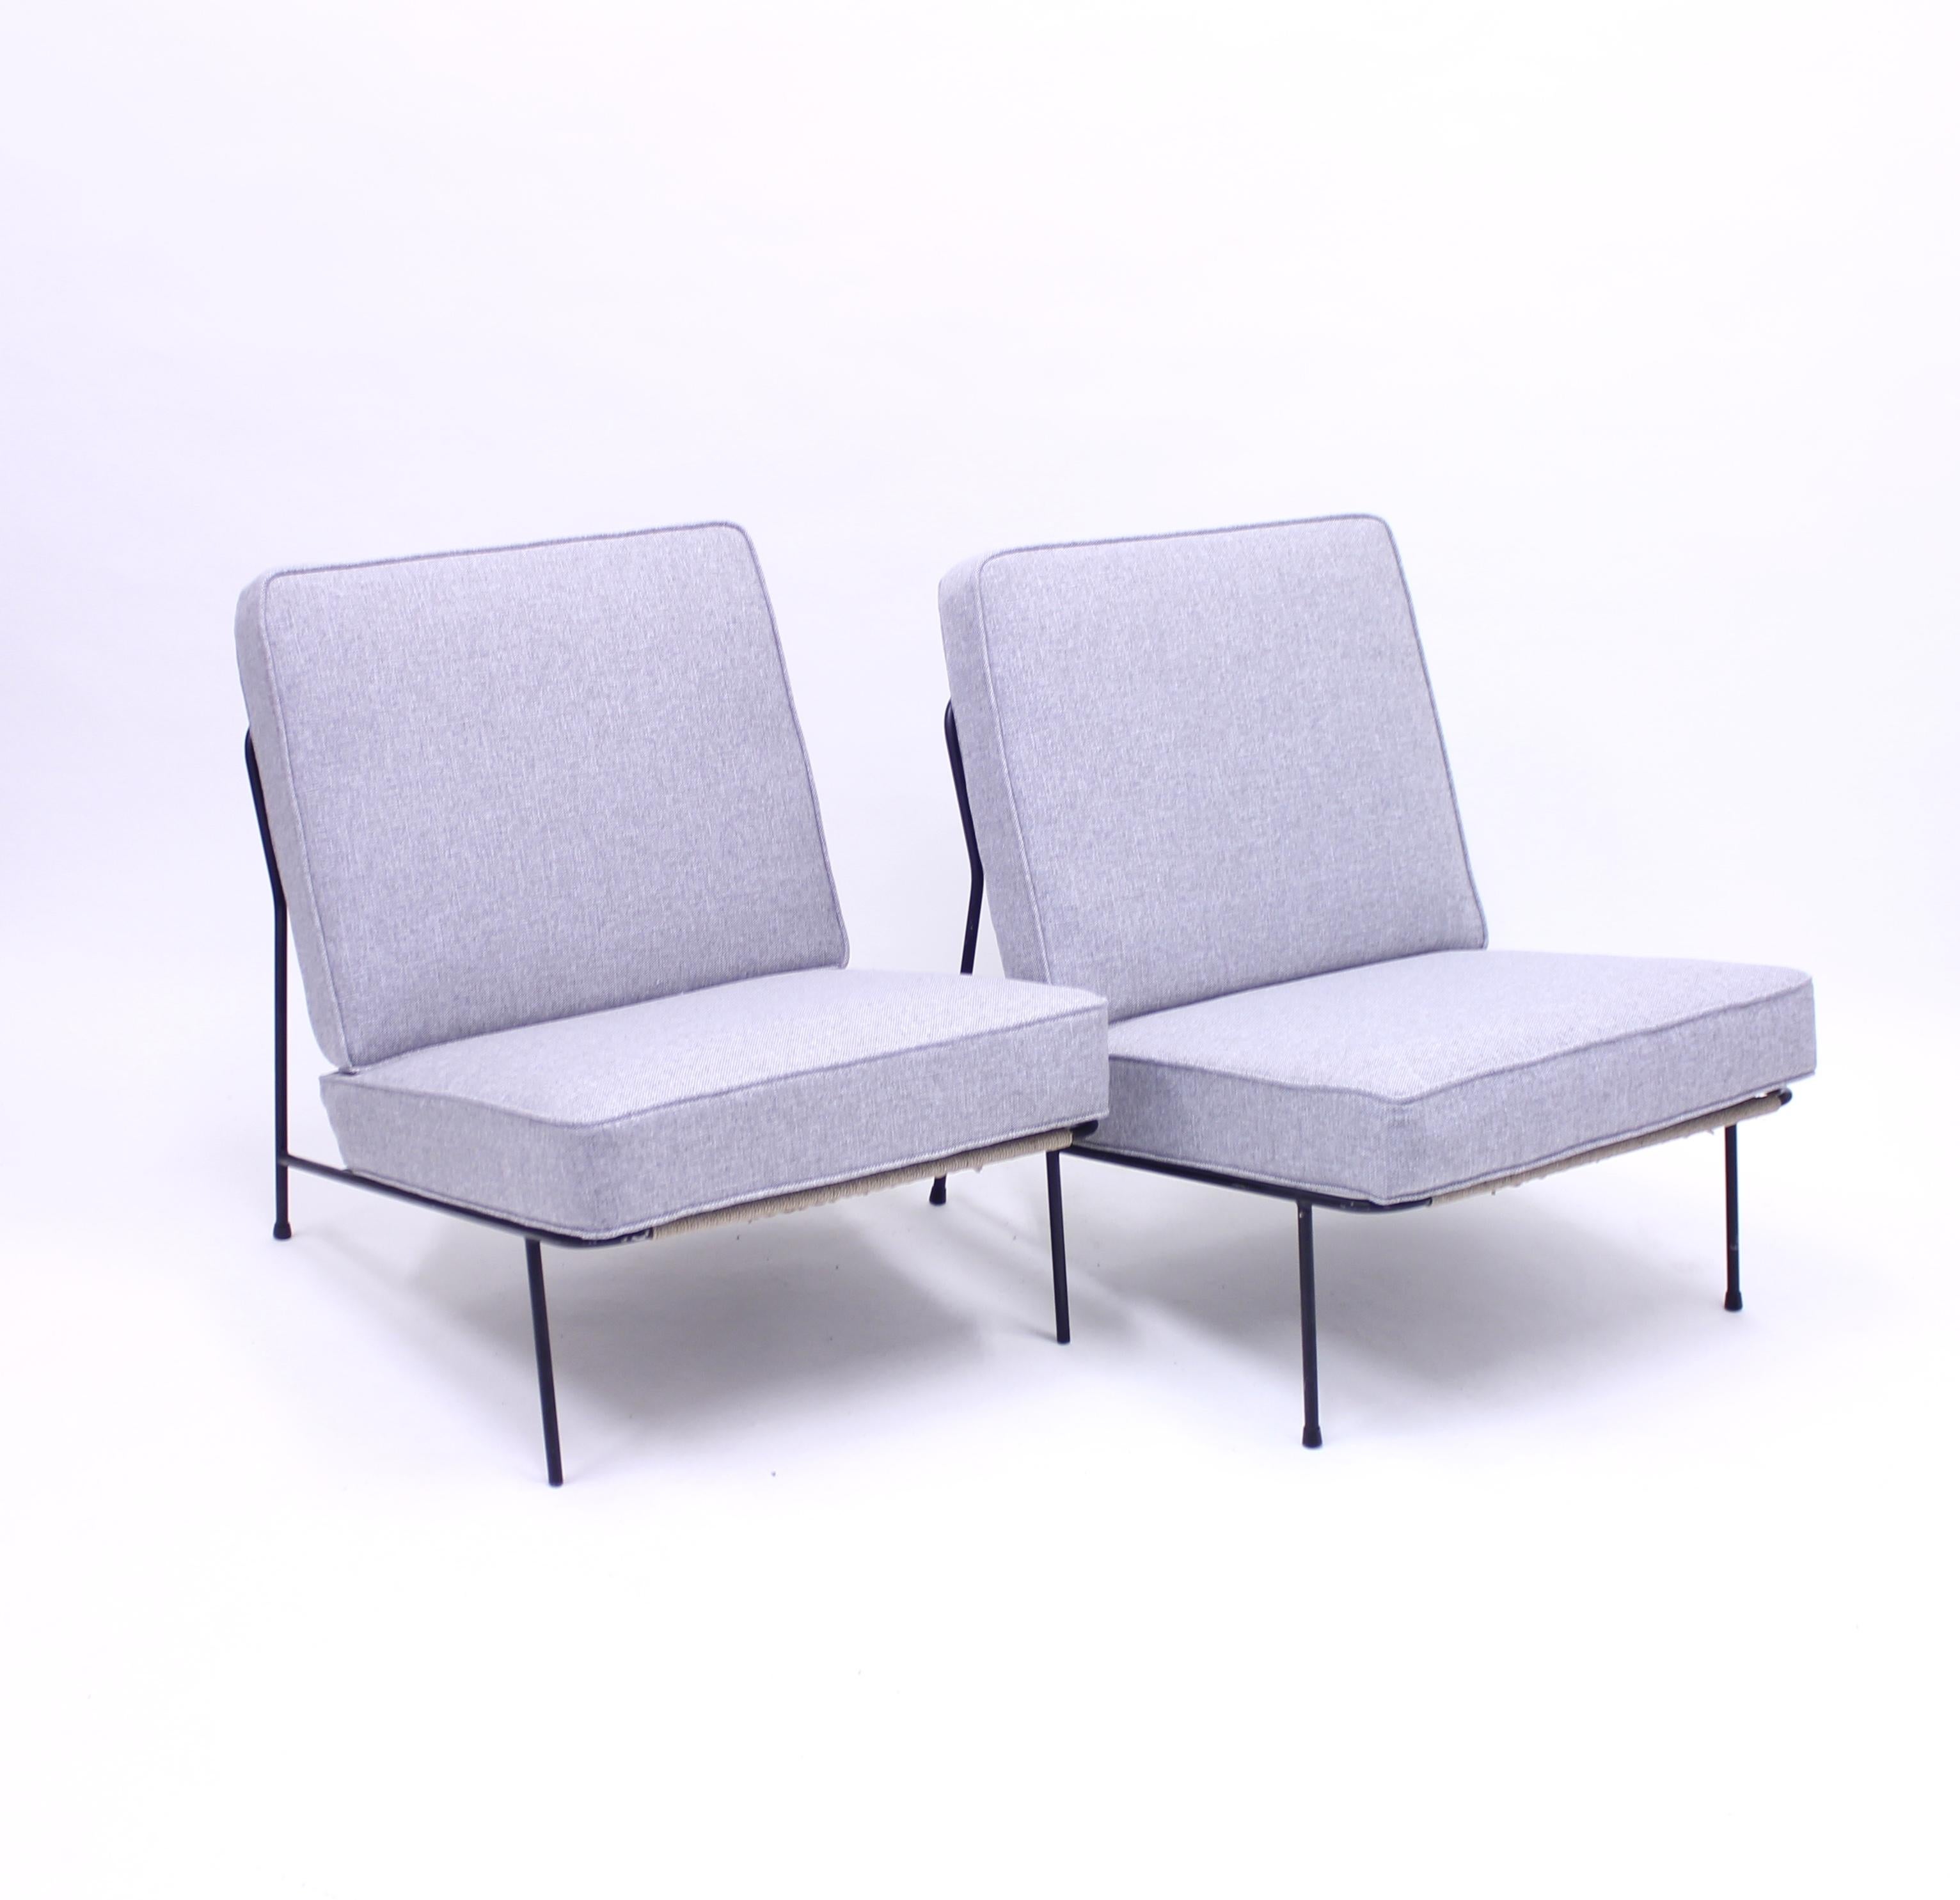 Ein Paar Loungesessel, entworfen von Alf Svensson für DUX / Ljungs Industrier und deren Möbelserie Bra Bohag in den 1950er Jahren. Das Modell wurde 1955 auf der sehr bekannten H55-Ausstellung in Helsingborg, Schweden, ausgestellt, die zu den